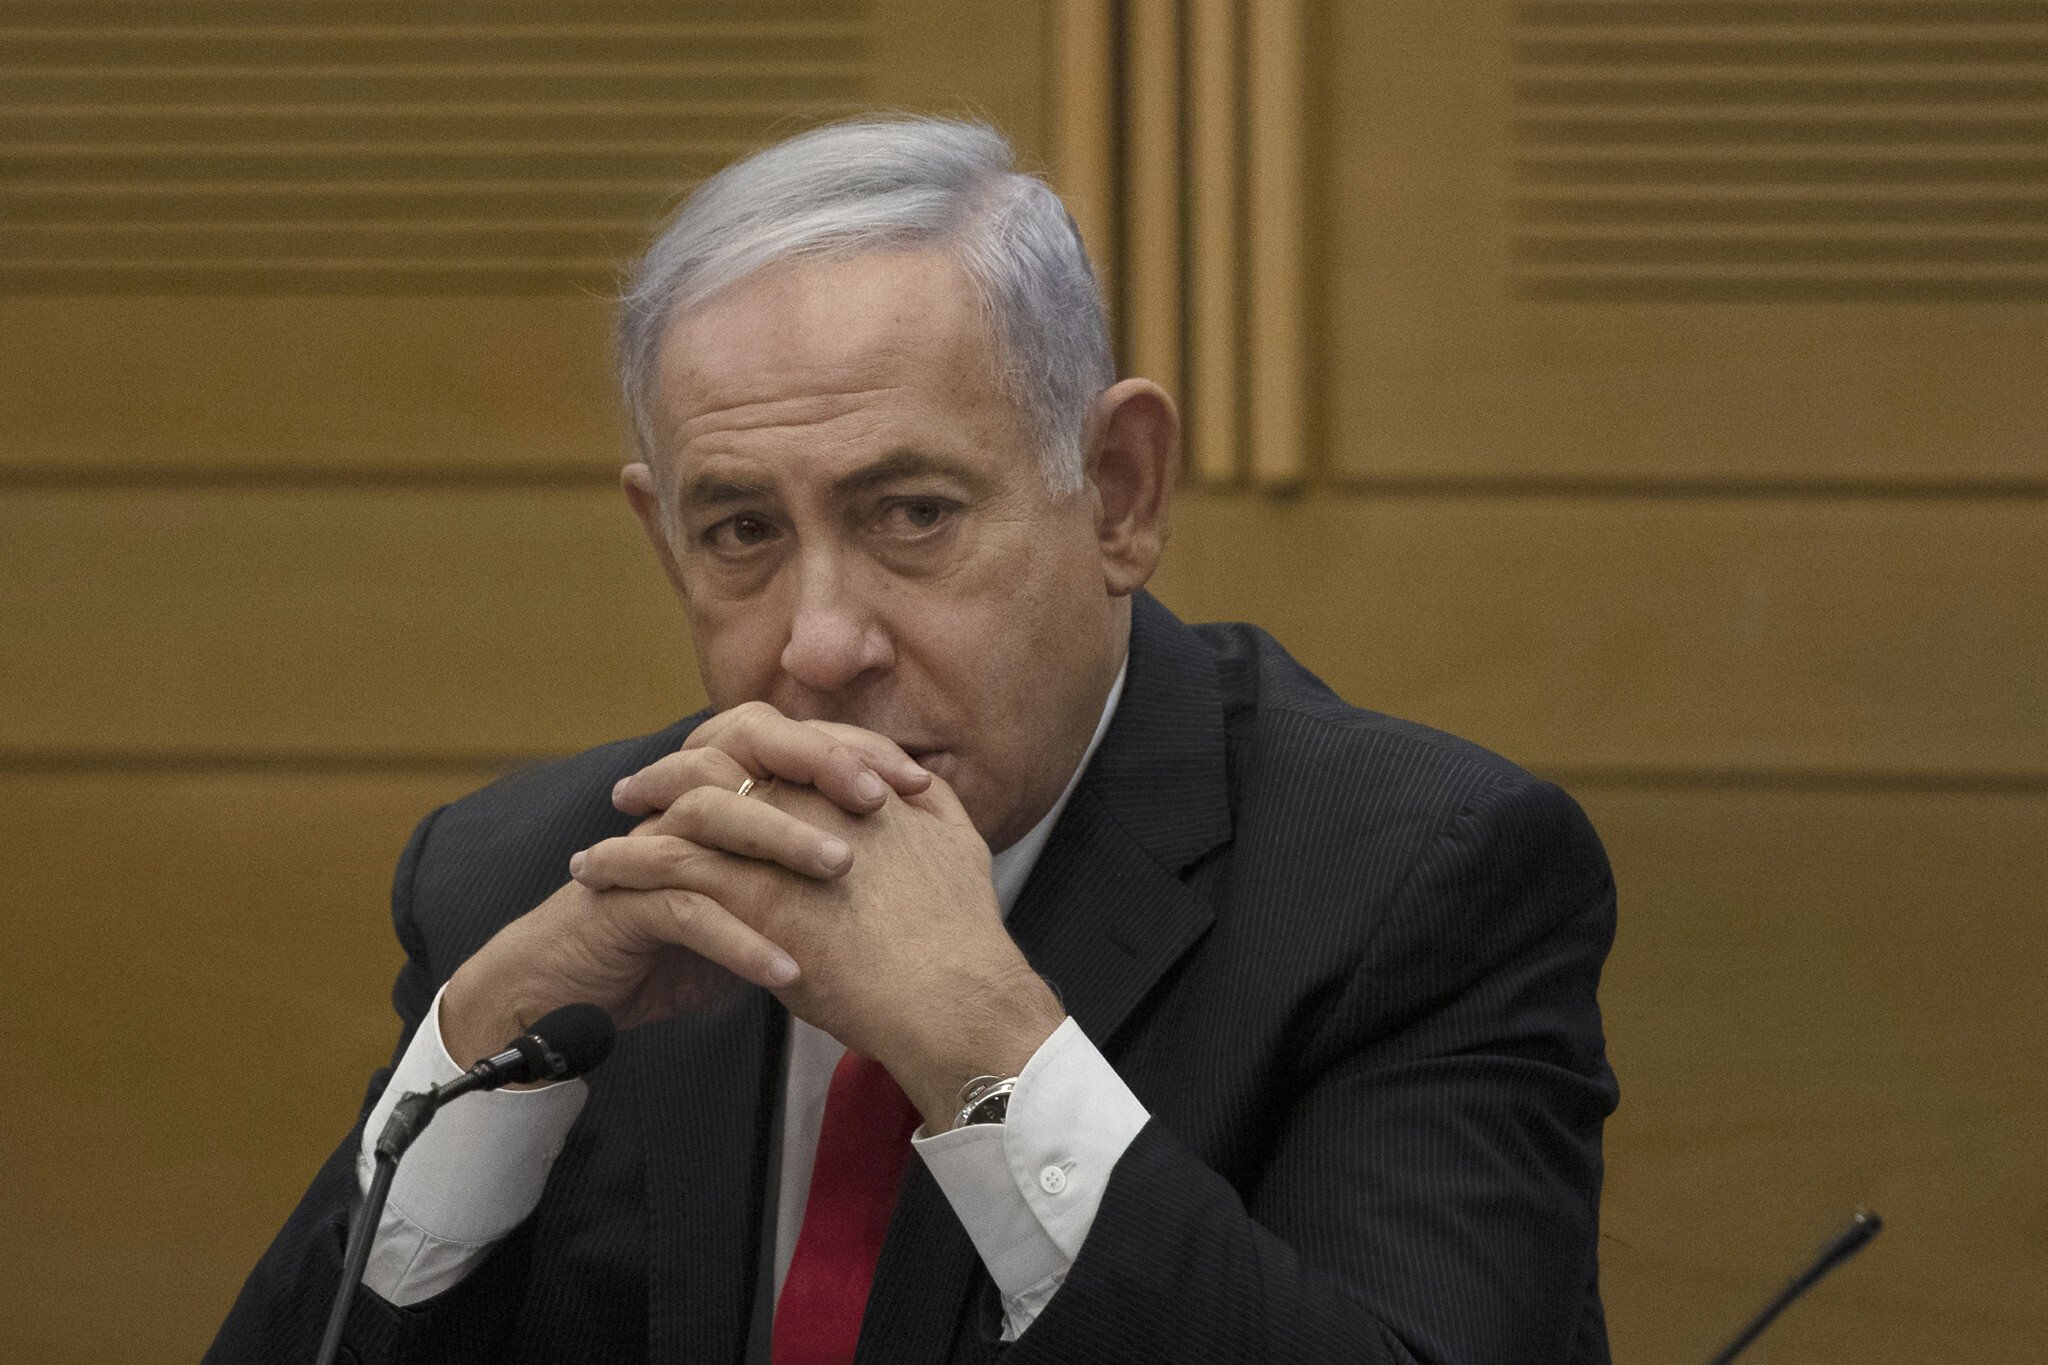  Fostul premier israelian Benjamin Netanyahu negociază un acord de recunoaştere a vinovăţiei în procesul său de corupţie (surse)